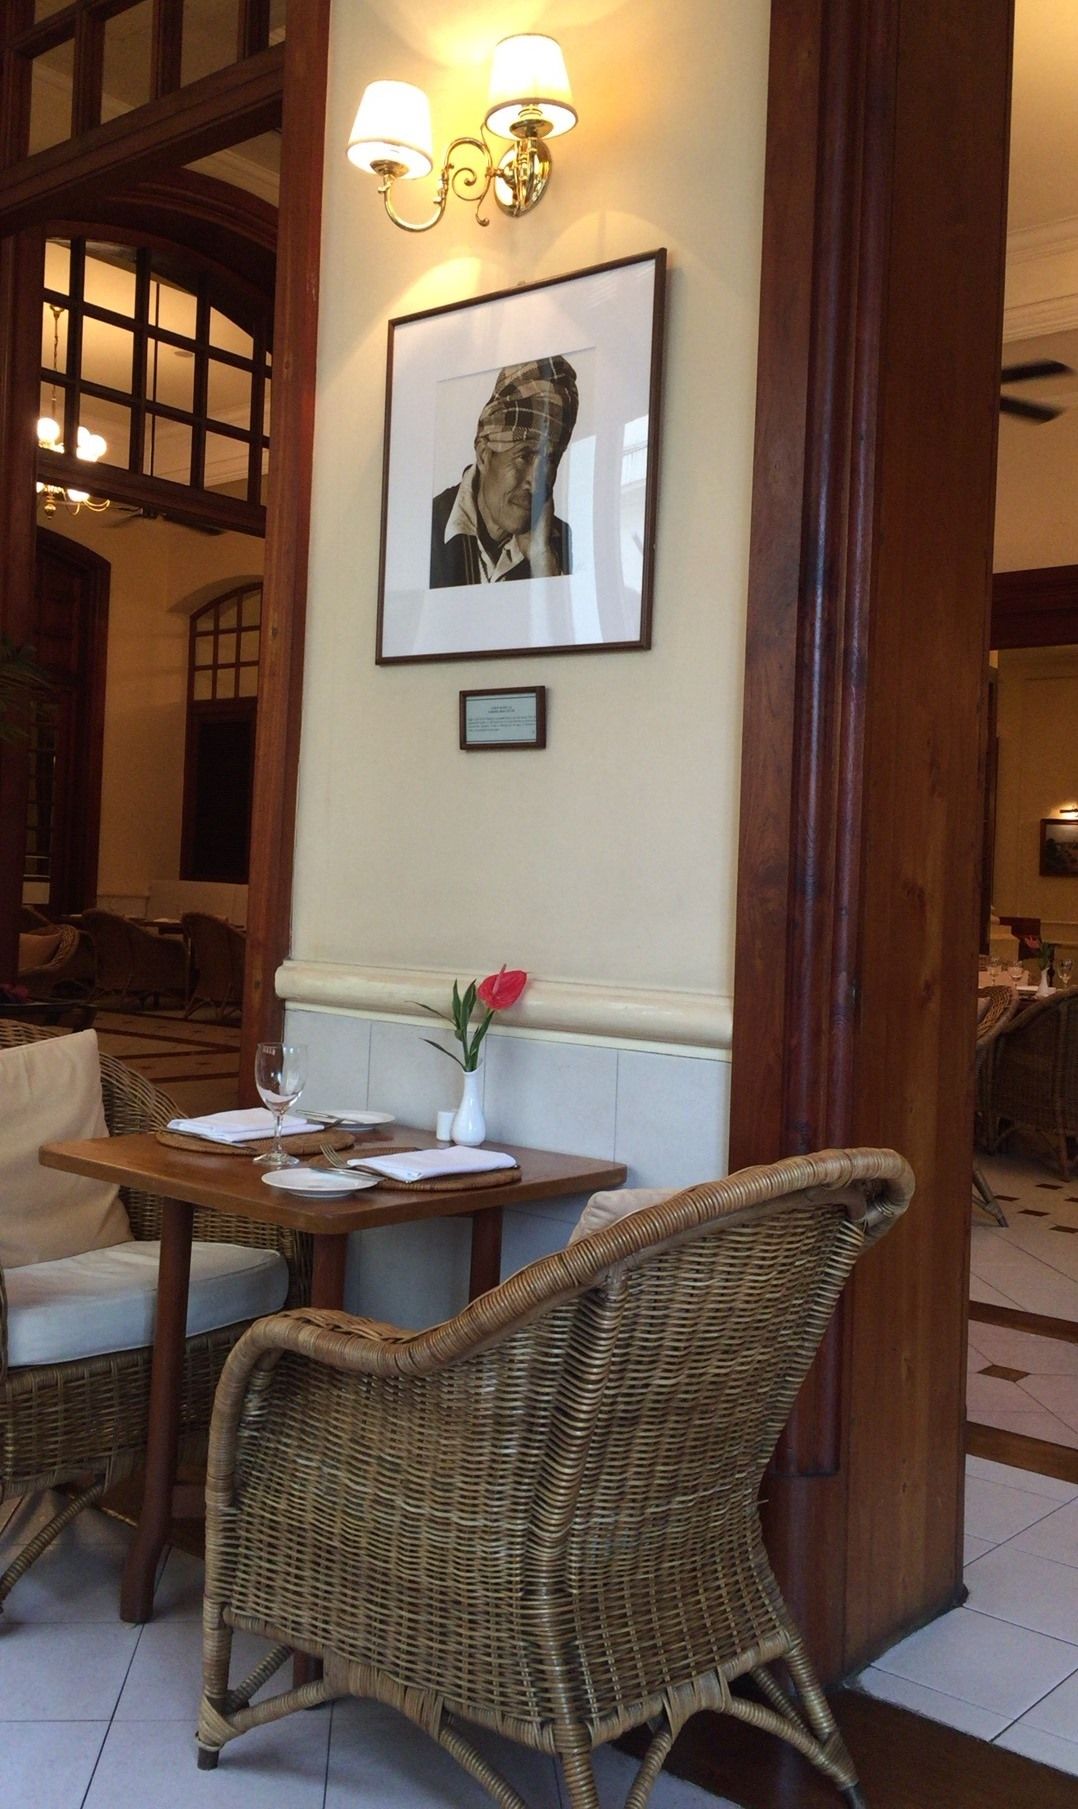 ヤンゴンに行ったら「ストランドホテル(The Strand Hotel Yangon)」のカフェで休憩も宜しいかと